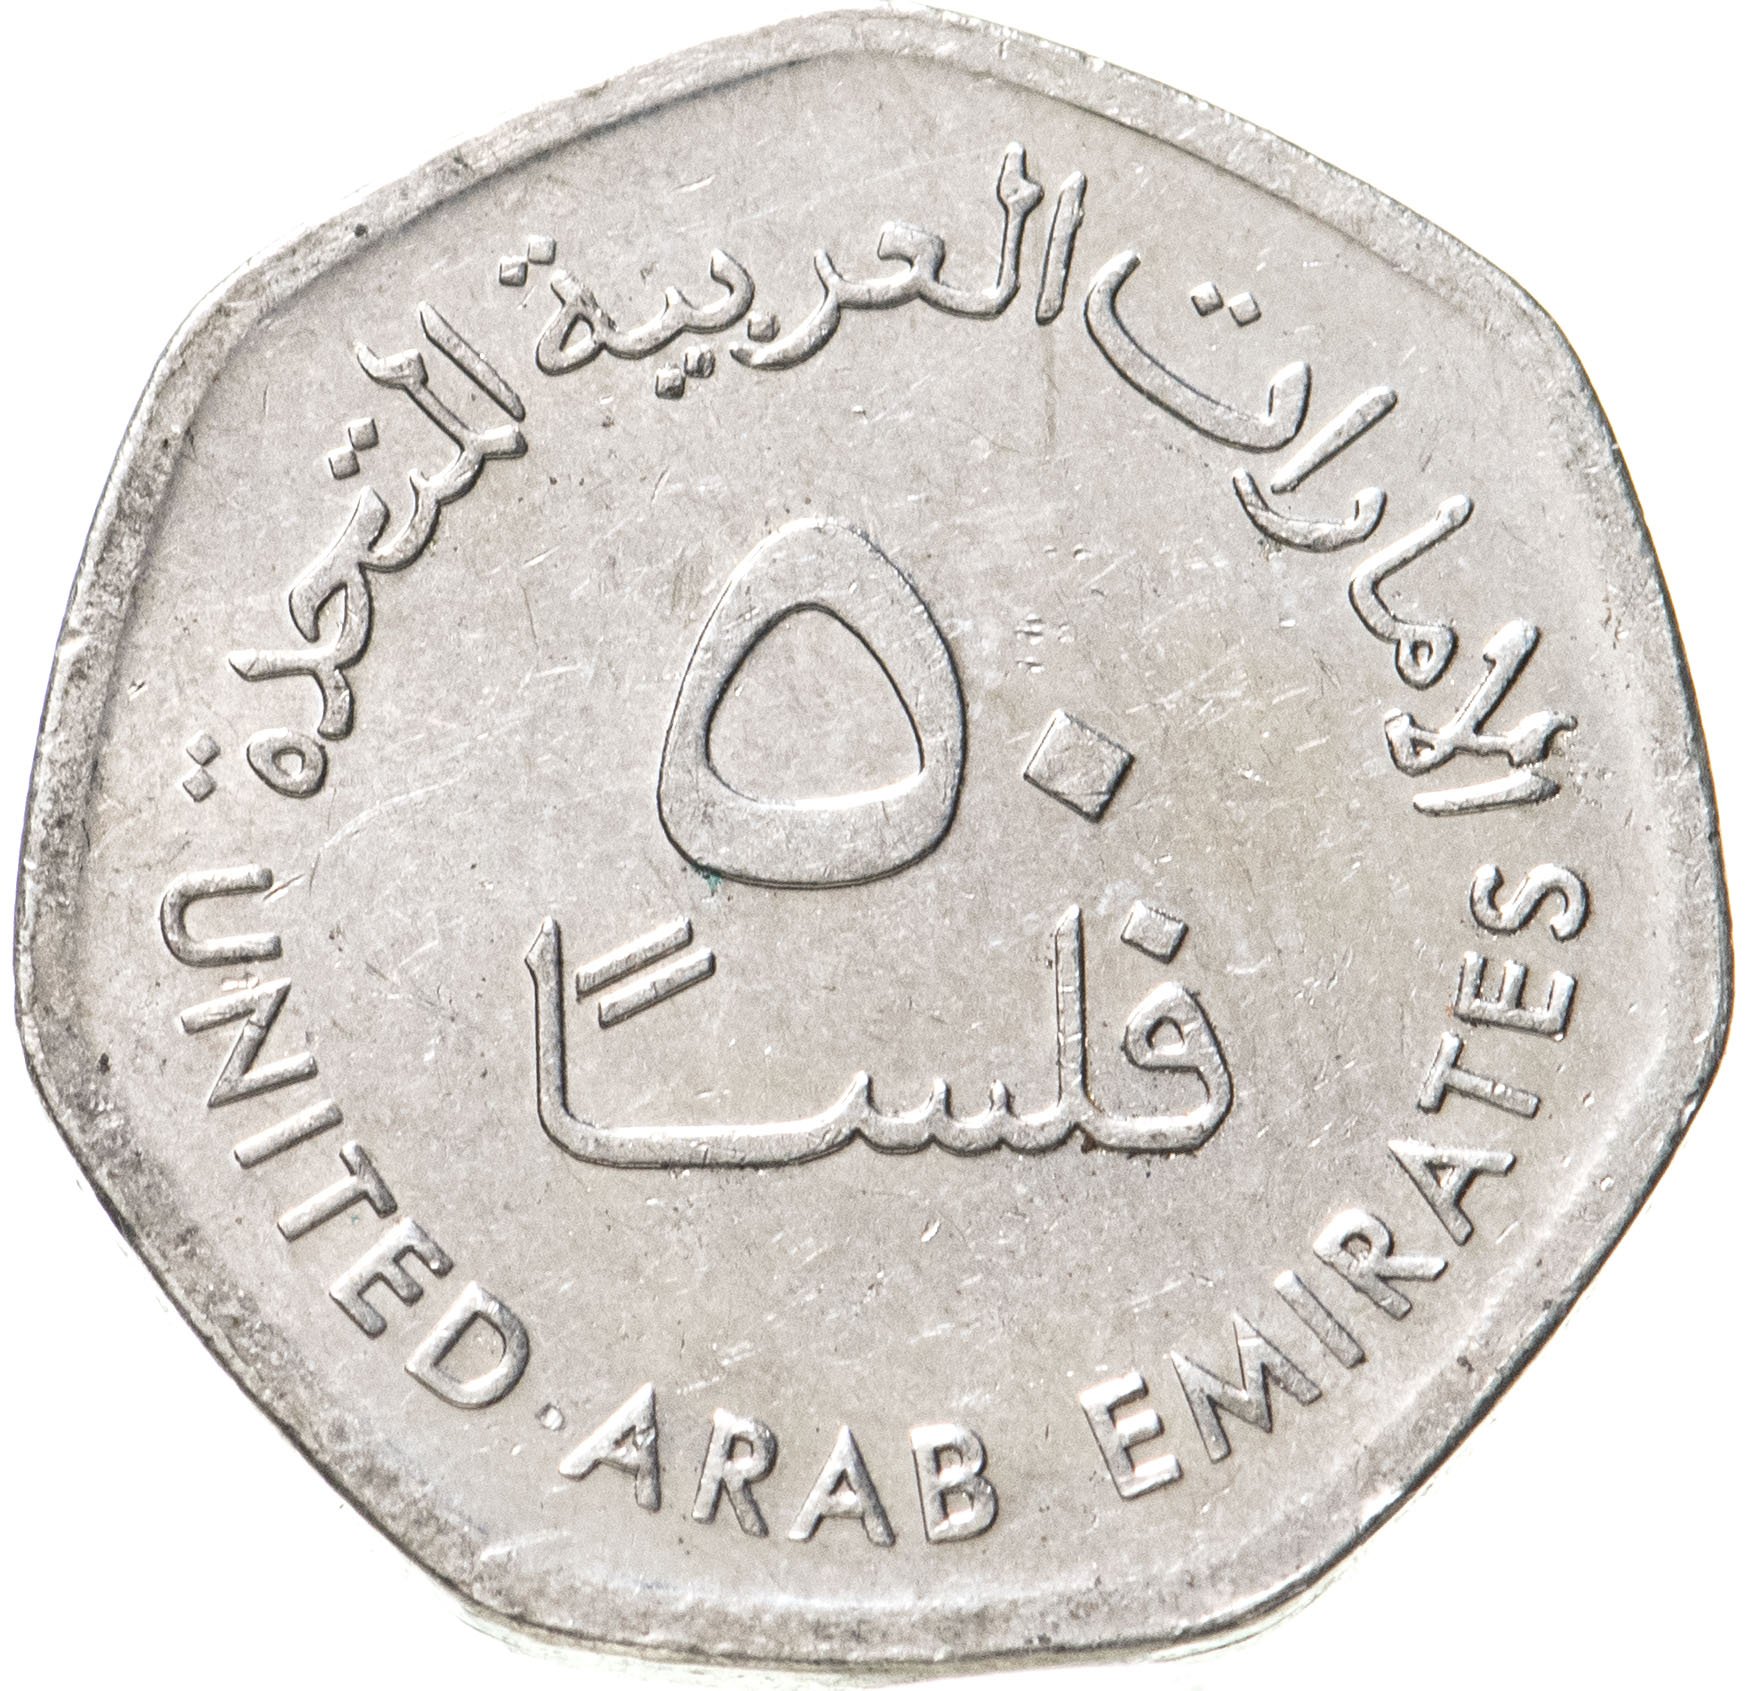 1 дирхам монета. Монетка арабских Эмиратов 50 филсов. 50 Филсов монета. Монета ОАЭ 50 филс 2013. Номинал монет ОАЭ дирхам.